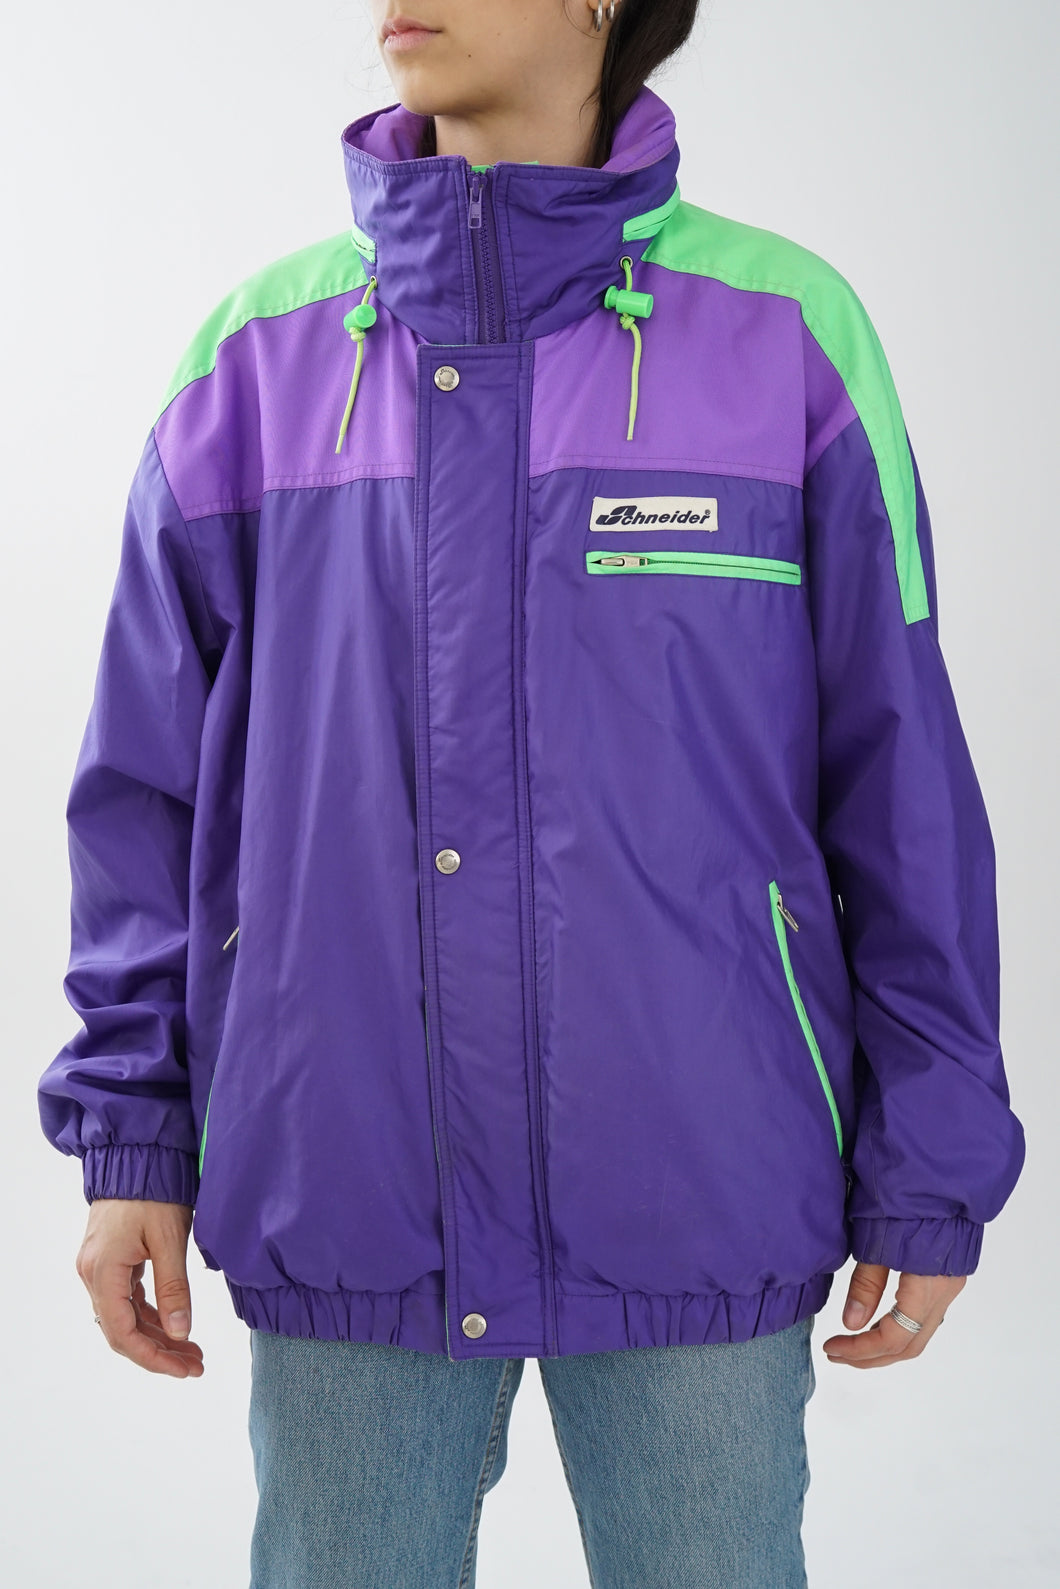 Manteau léger de ski Schneider mauve et vert fluo unisex taille M-L